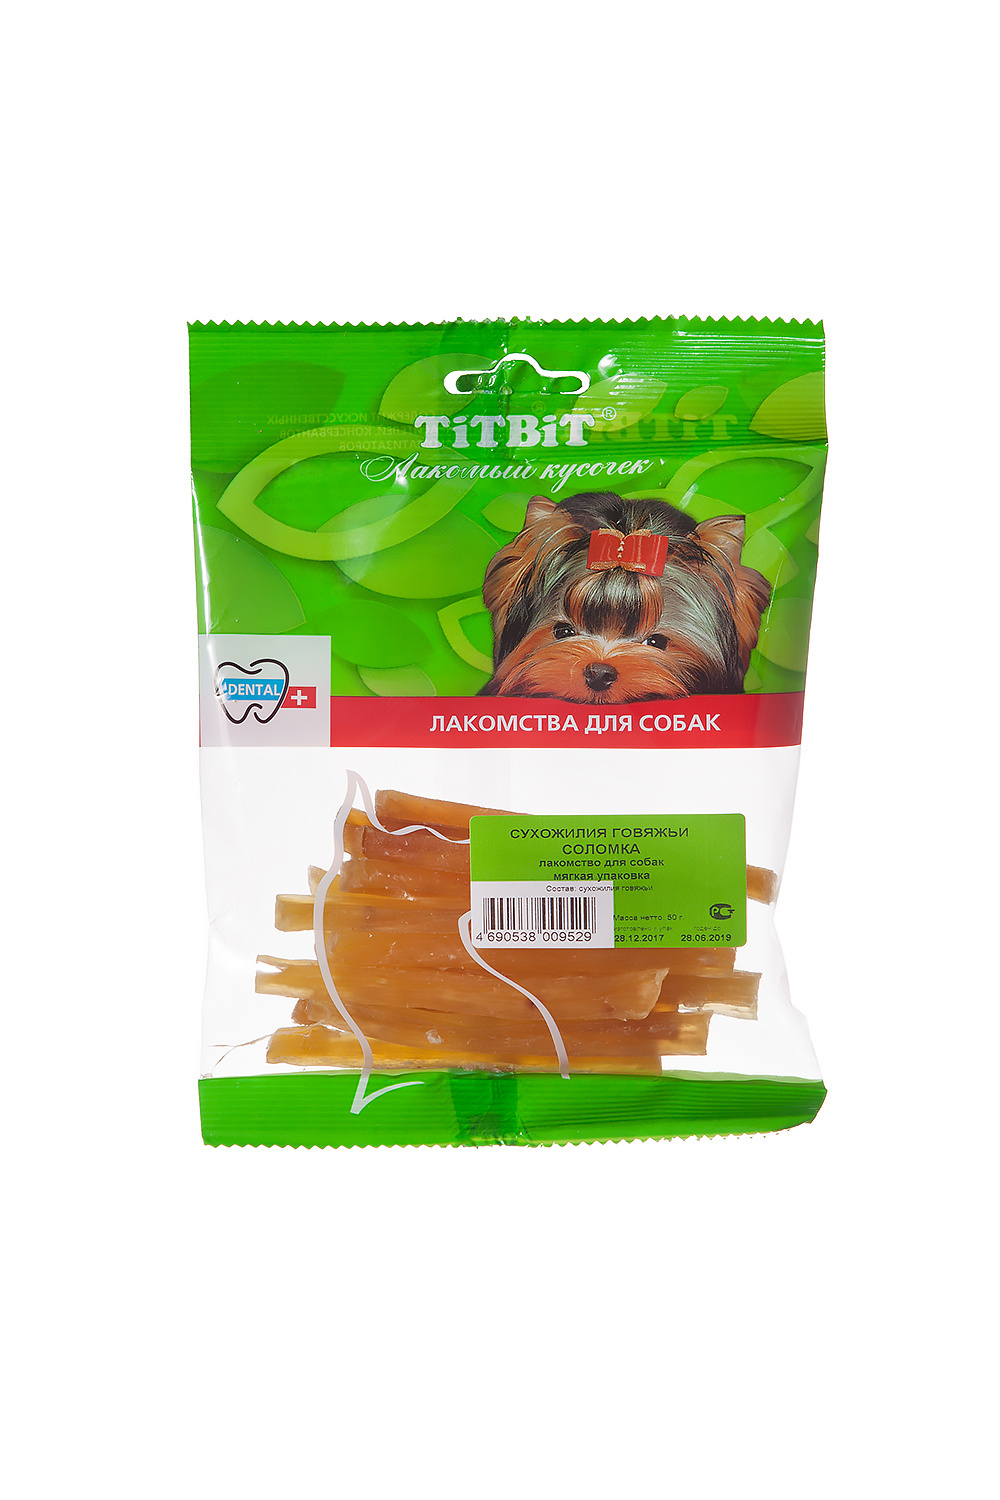 TiTBiT TiTBiT сухожилия говяжьи (соломка) - мягкая упаковка (50 г) titbit titbit желудок говяжий пластинки мягкая упаковка 50 г